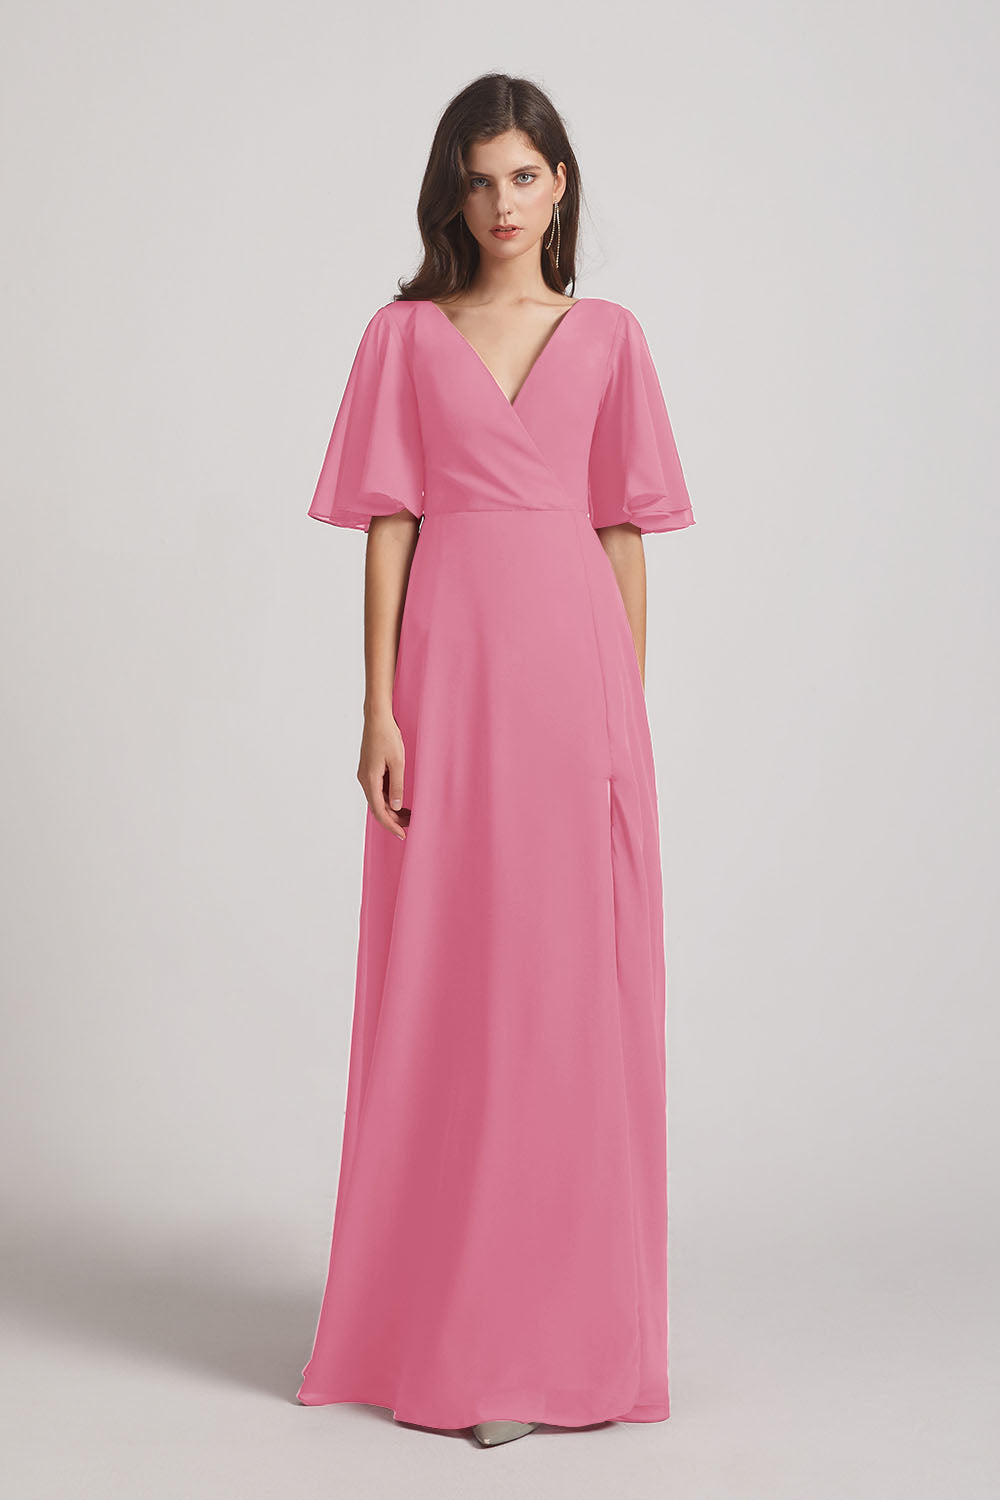 Alfa Bridal Skin Pink V-Neck Chiffon Side Slit Bridesmaid Dresses With Flutter Half Sleeves (AF0056)